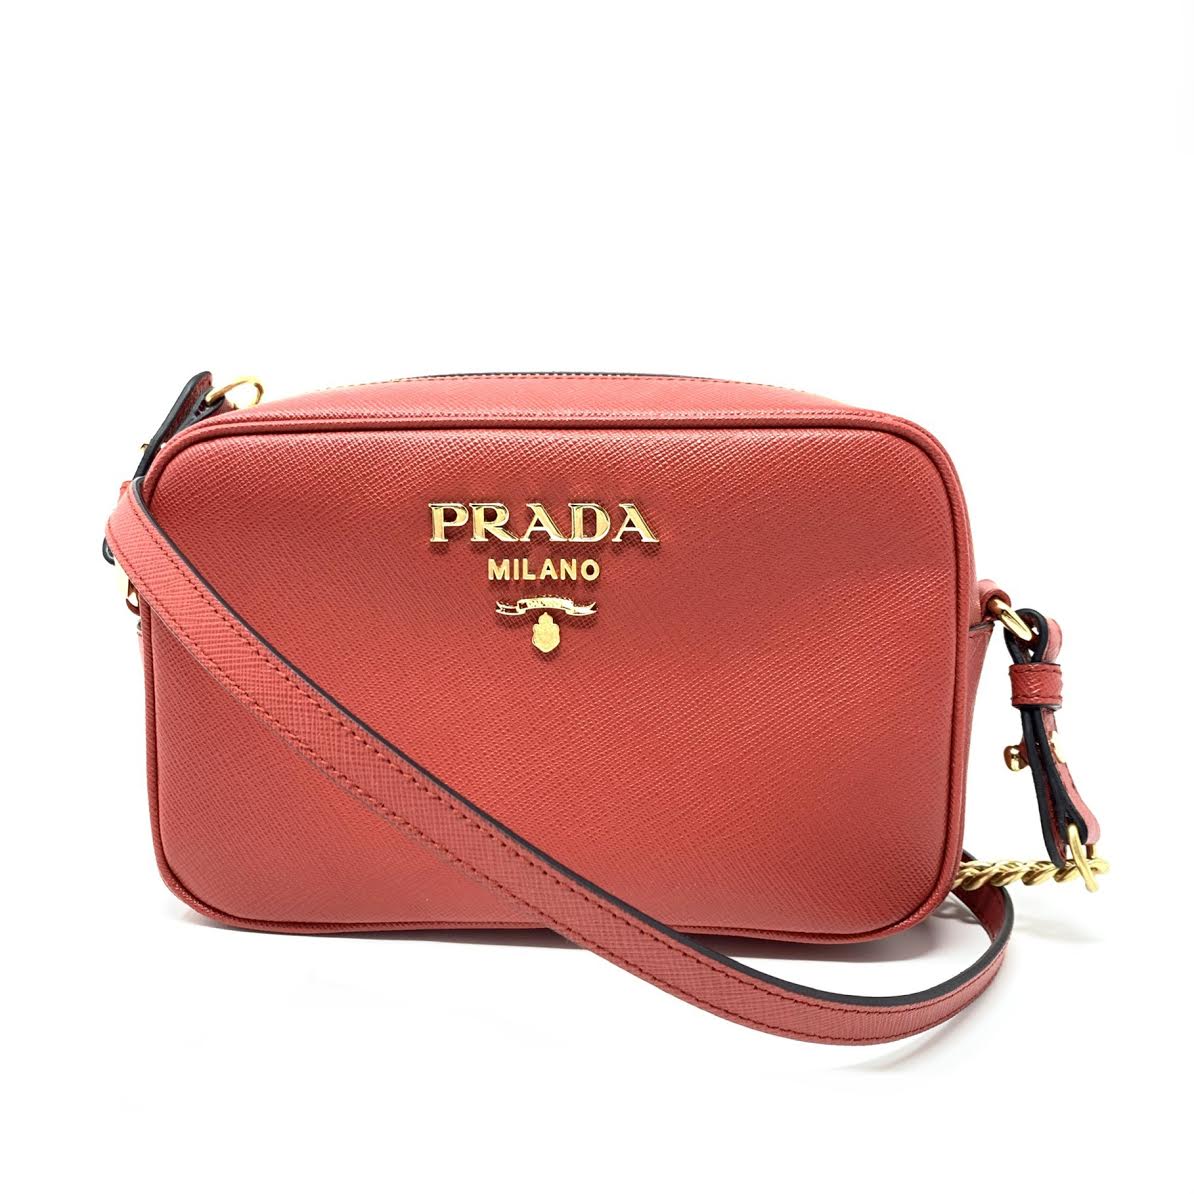 Prada Saffiano Mini Camera Bag in Red Gold Hardware – Coco